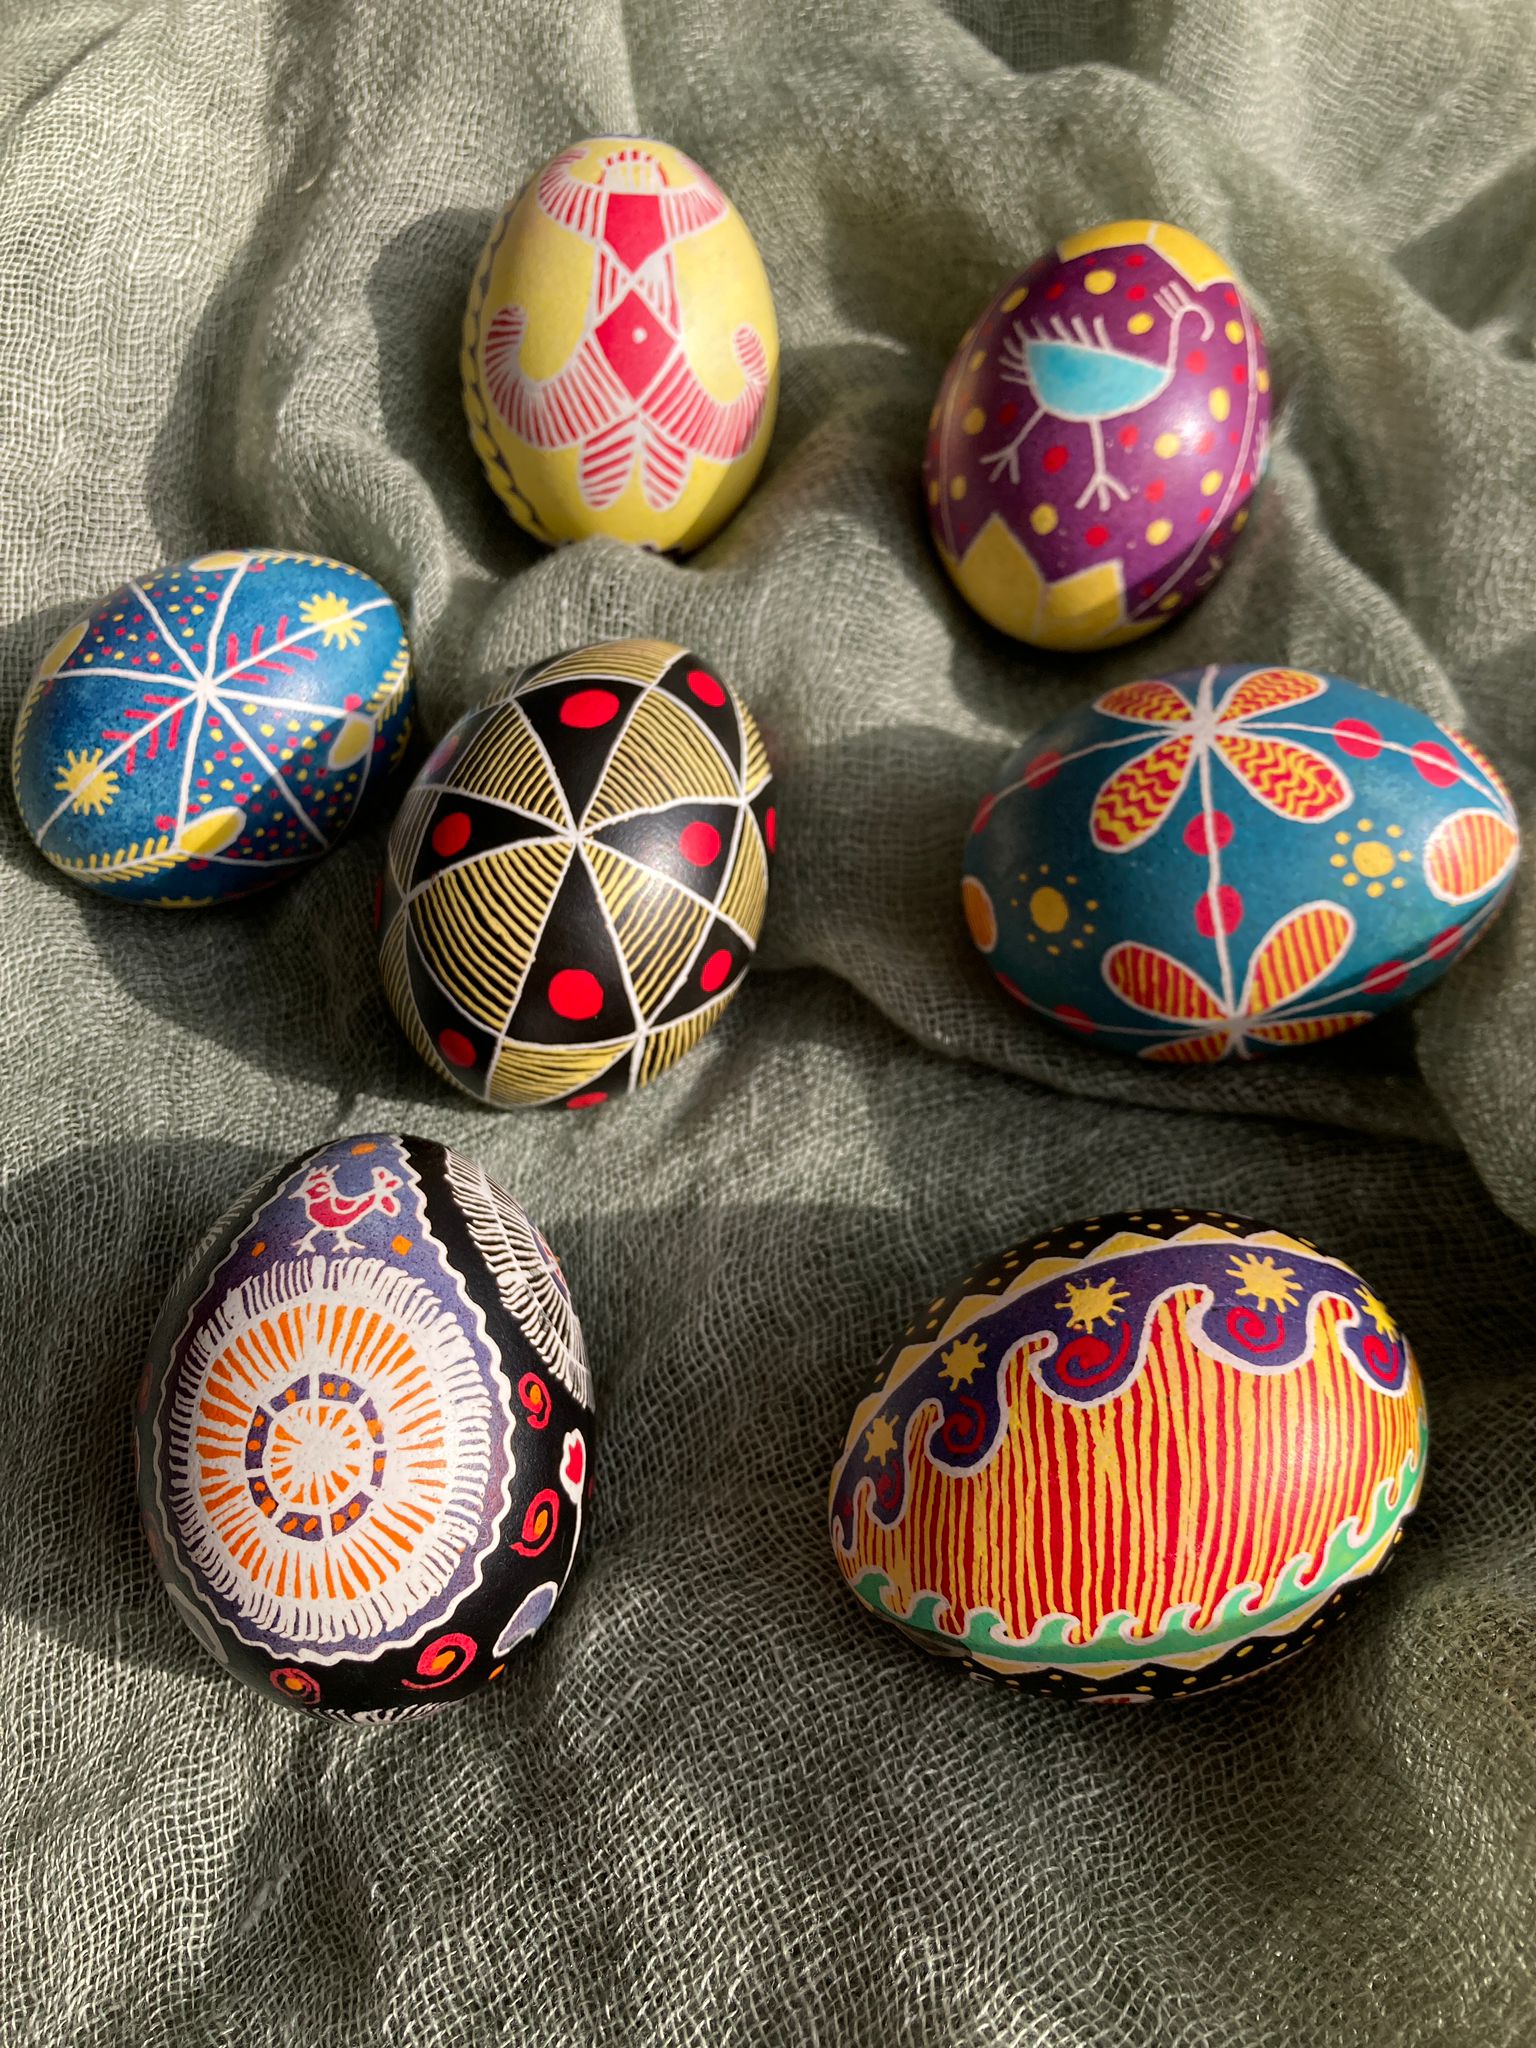 Egg painting workshop